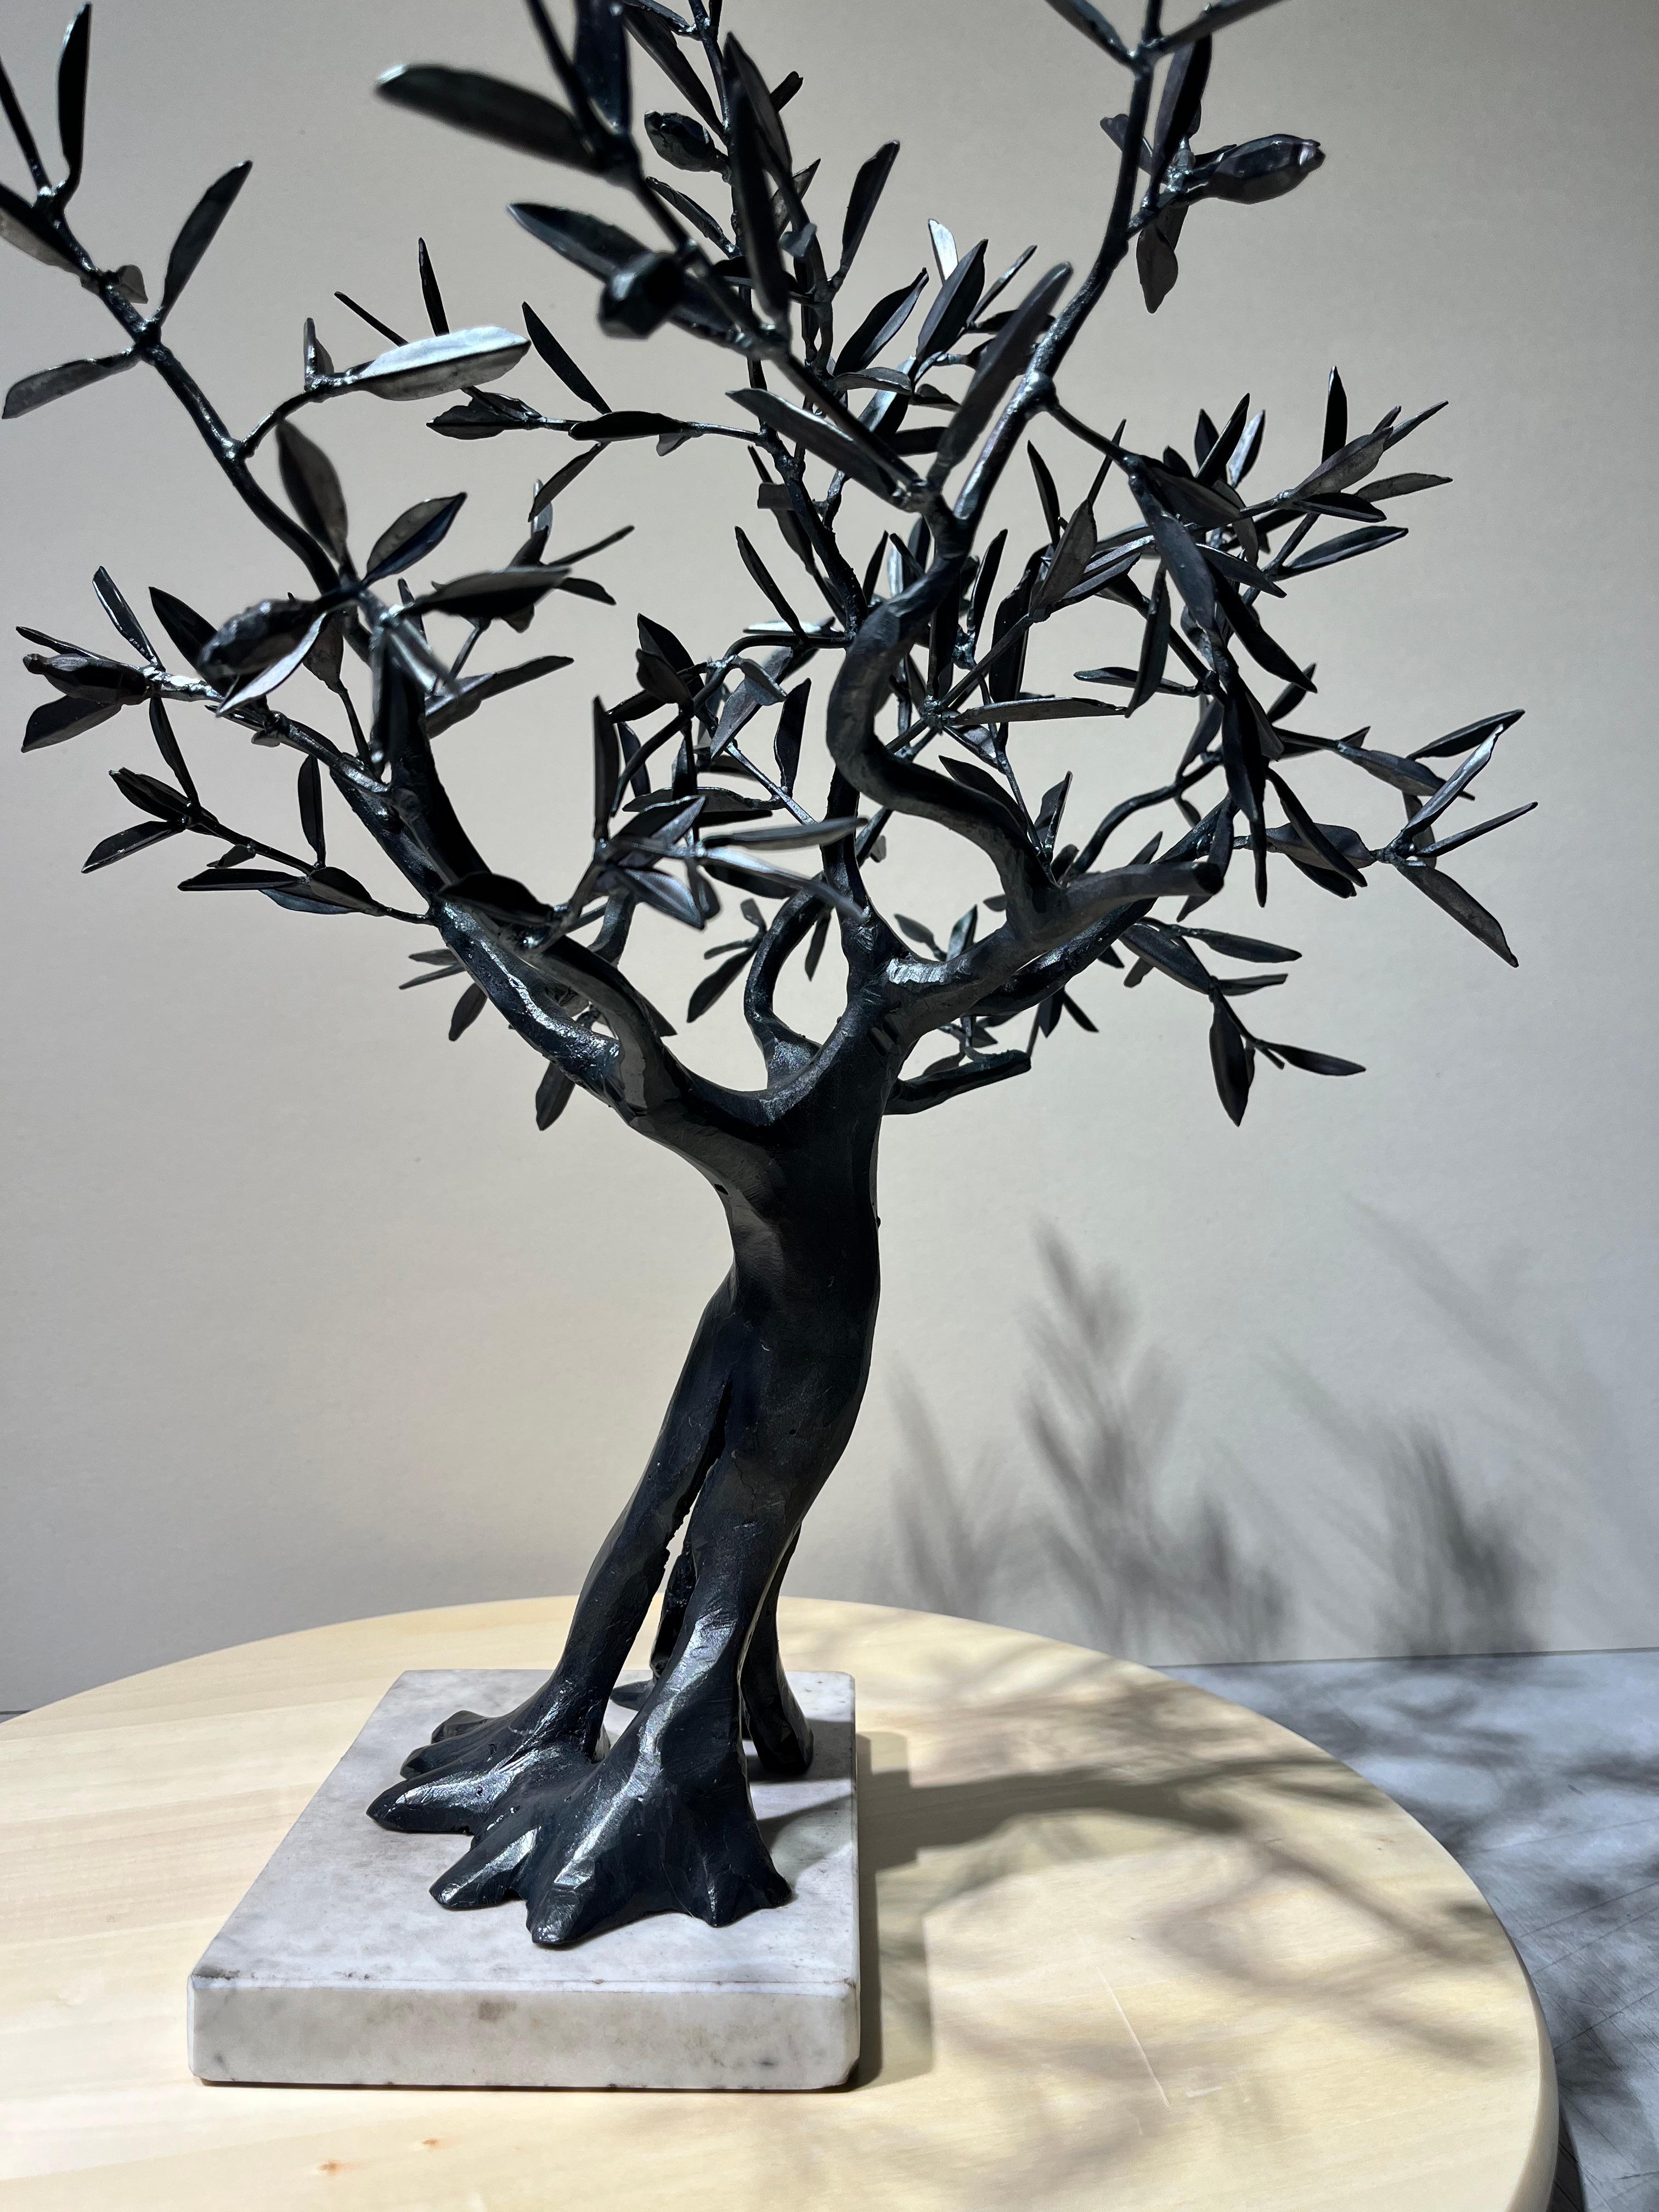 Arbre Bonsaï Ulive sculpture en fer forgé noir par un maître italien - Réalisme Sculpture par Ivan Zanoni